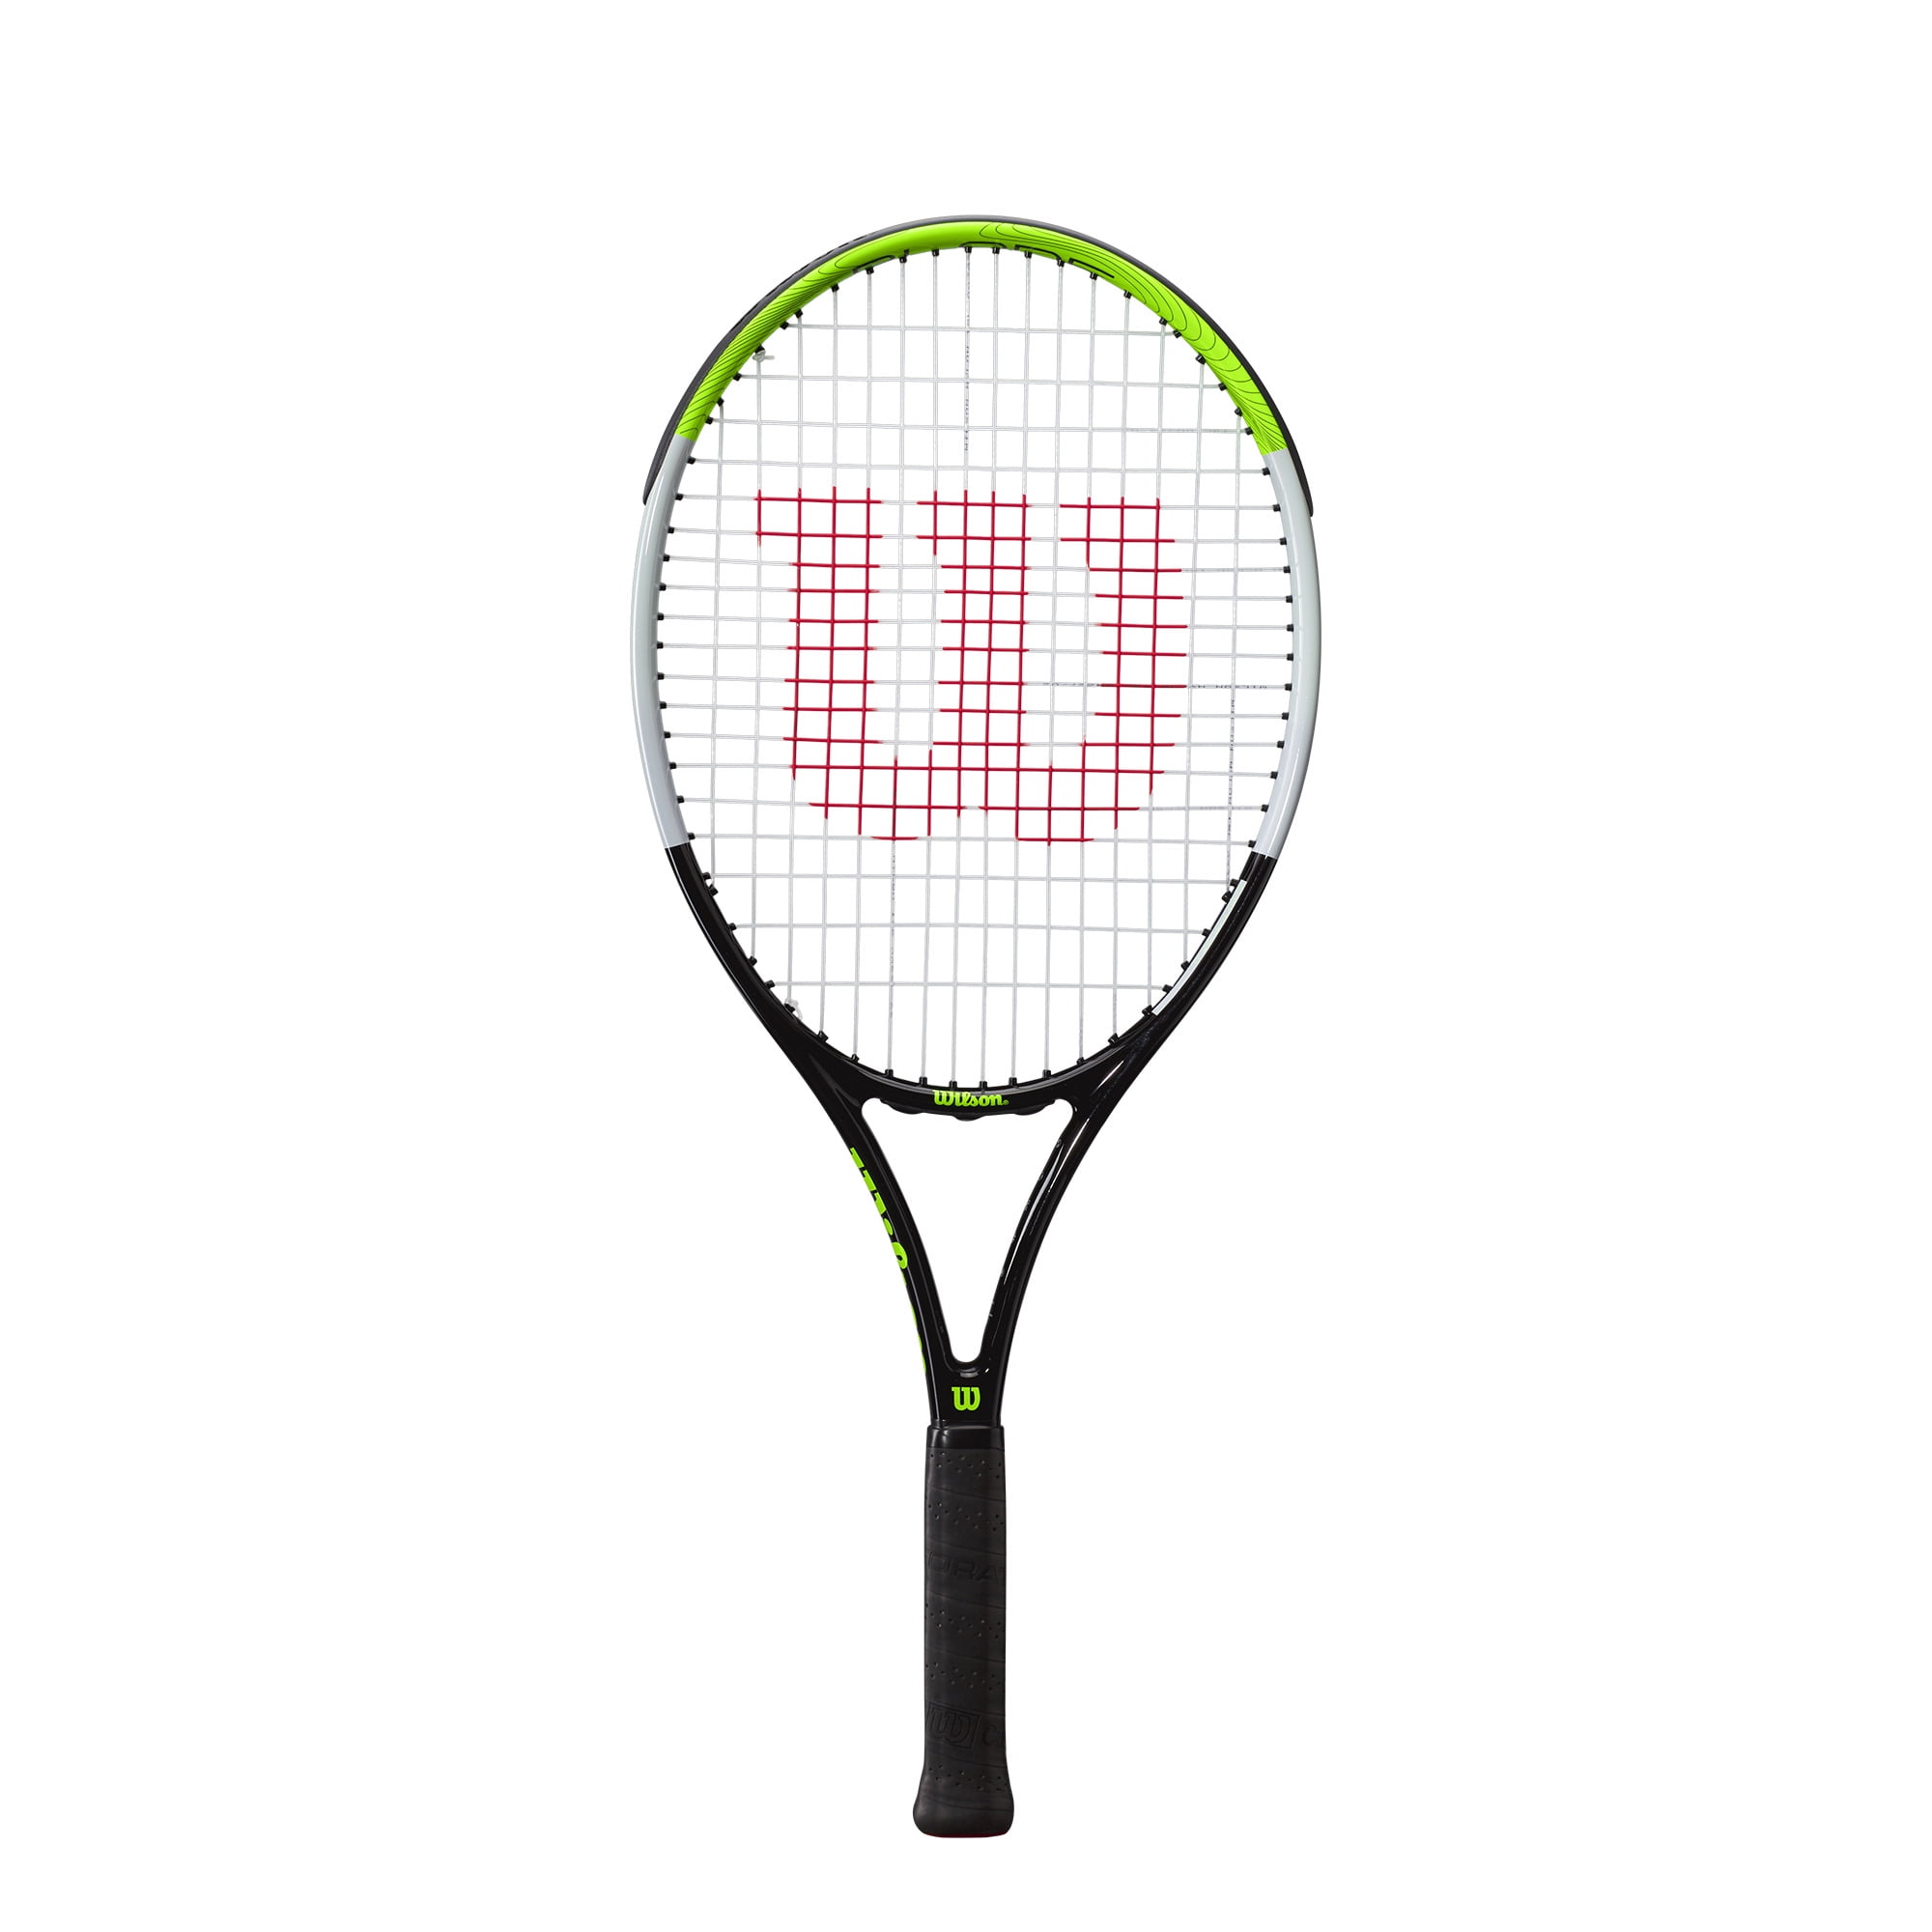 Reden Worden spellen Wilson Blade Feel 25" Junior Tennis Racket - Green & Black (Ages 9-10), 100  sq in, 9.1oz - Walmart.com